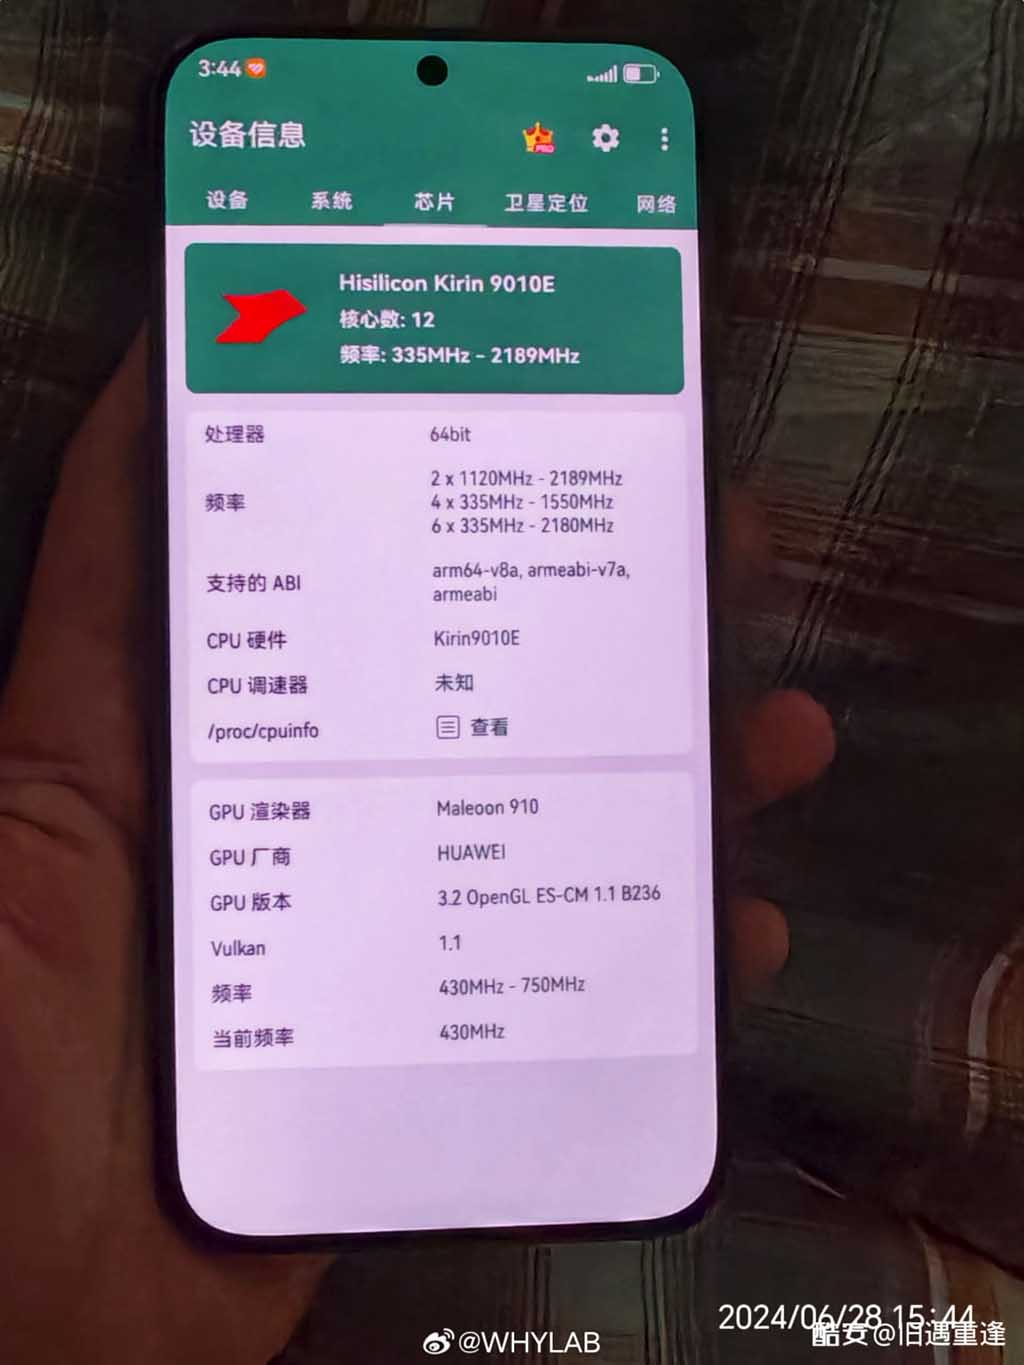 Huawei Pura 70 Satellite SMS Kirin 9010E